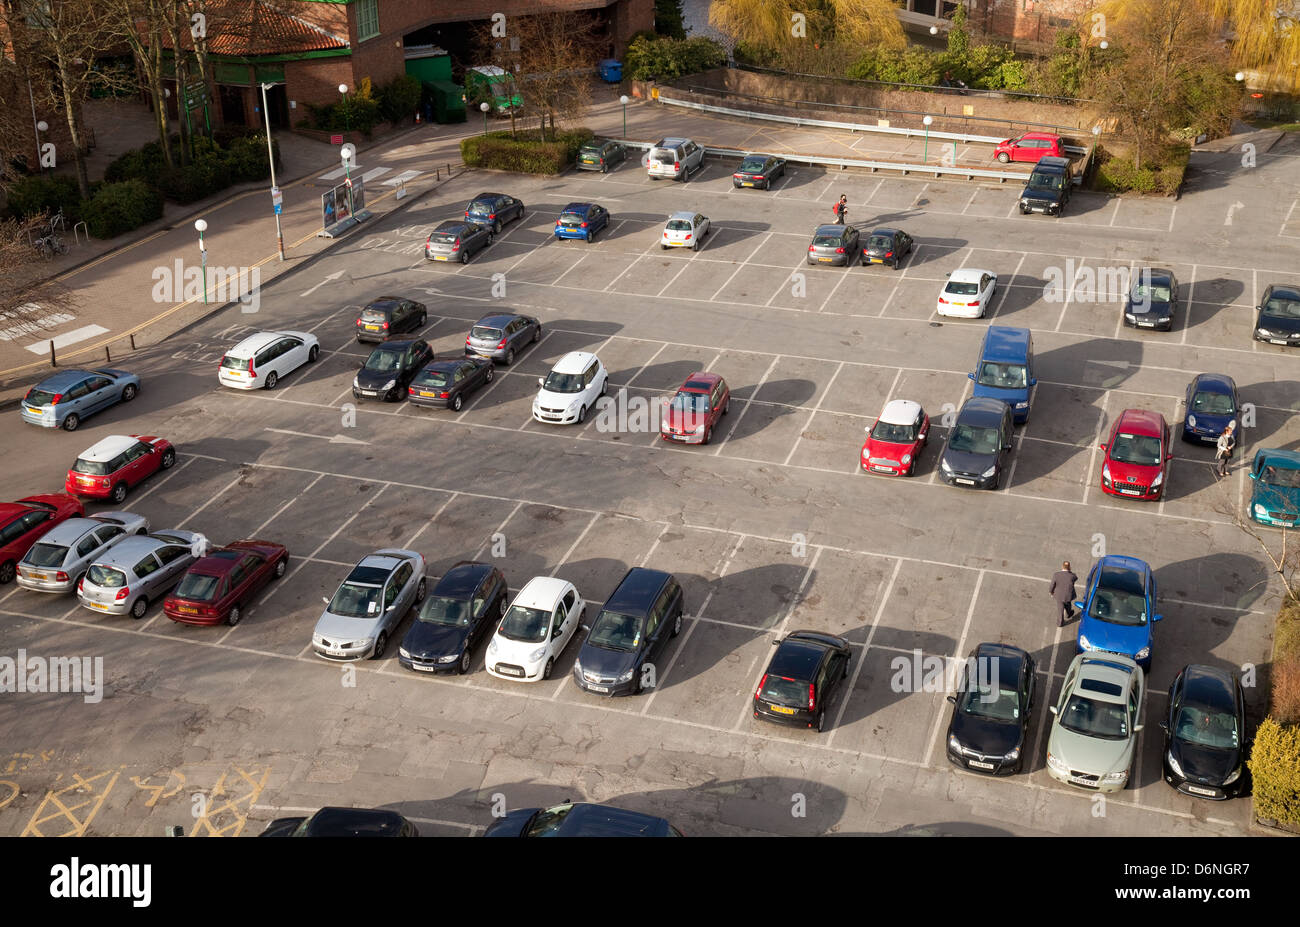 Los automóviles estacionados en un aparcamiento de coches visto desde arriba, de la ciudad de York, Yorkshire, Inglaterra Foto de stock